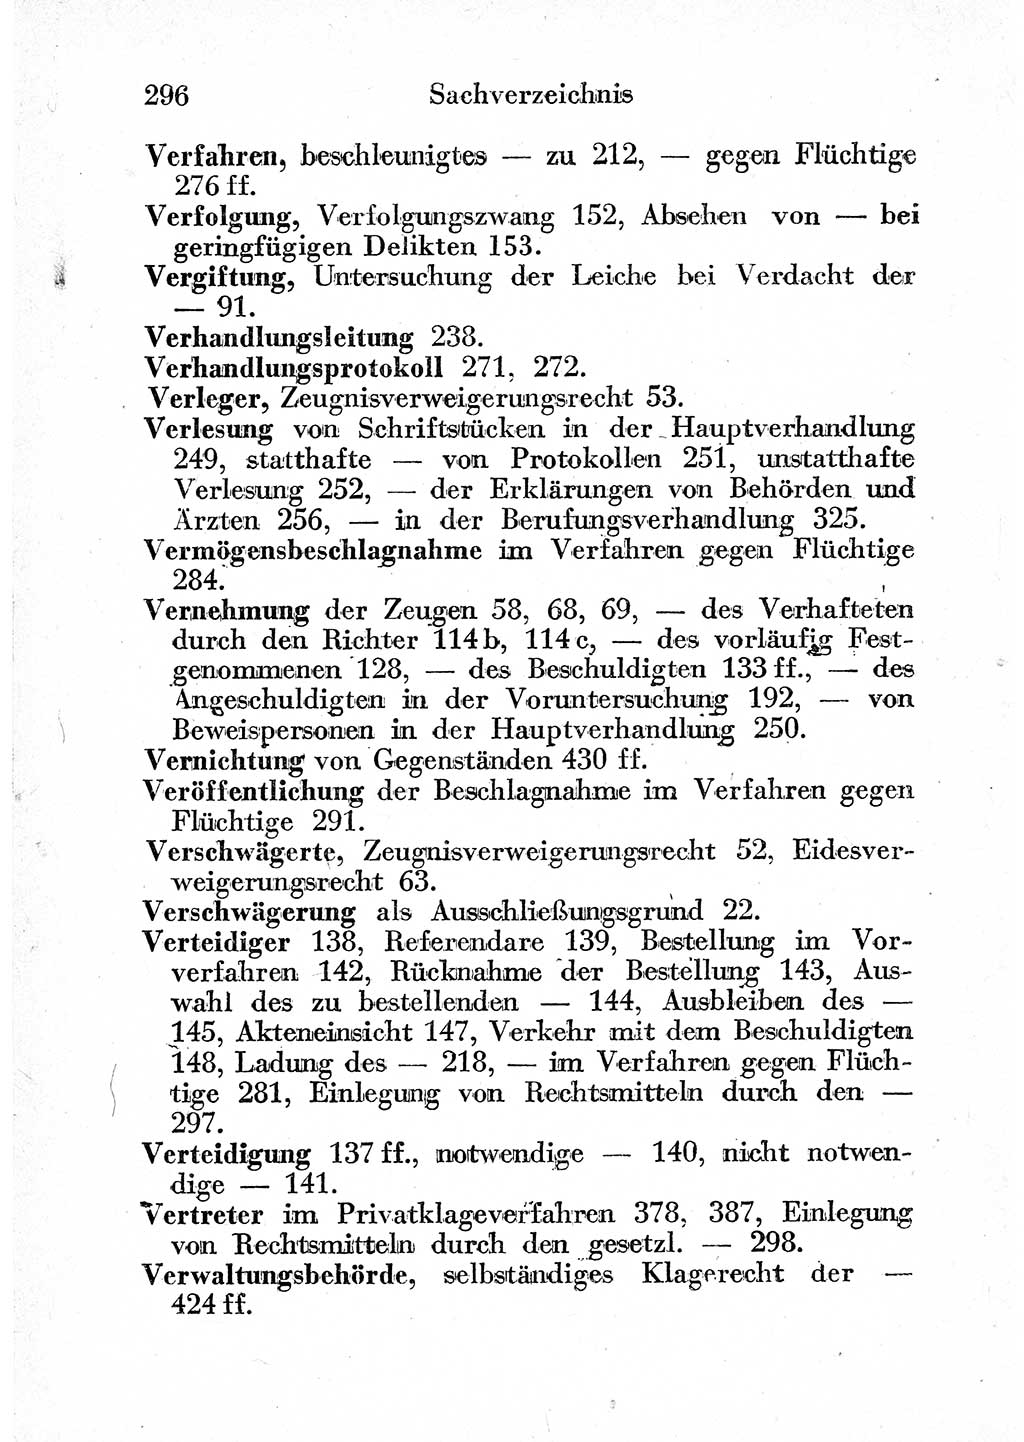 Strafprozeßordnung (StPO), Gerichtsverfassungsgesetz (GVG) und zahlreiche Nebengesetze der sowjetischen Besatzungszone (SBZ) in Deutschland 1949, Seite 296 (StPO GVG Ges. SBZ Dtl. 1949, S. 296)